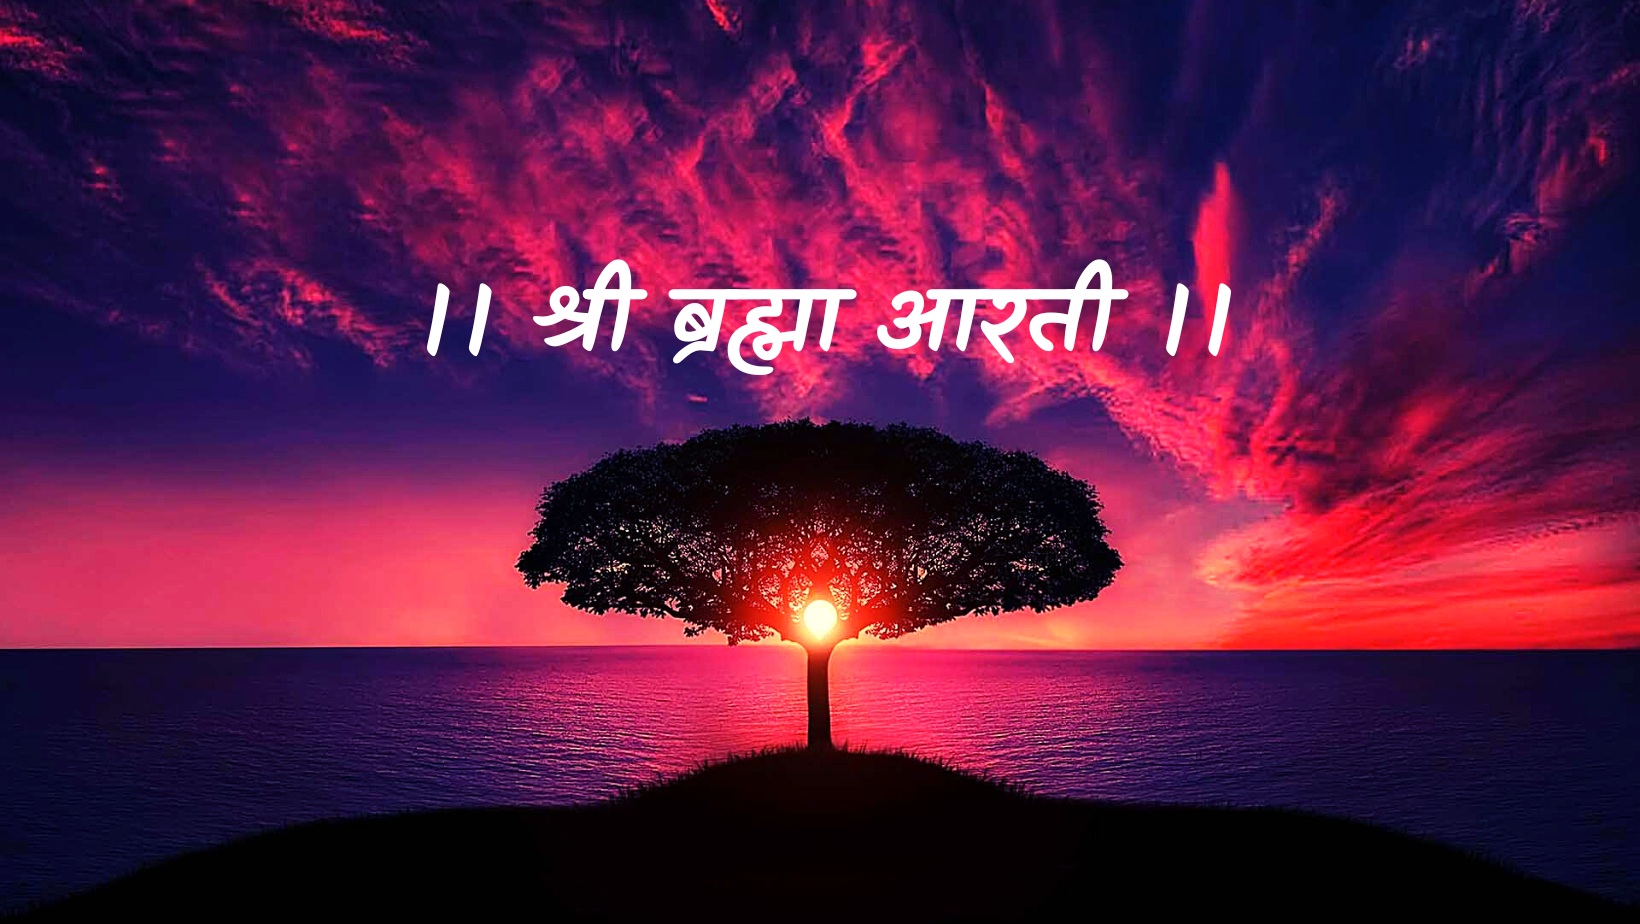 श्री ब्रह्मा जी की आरती | Shri Brahma ji ki aarti by विकास